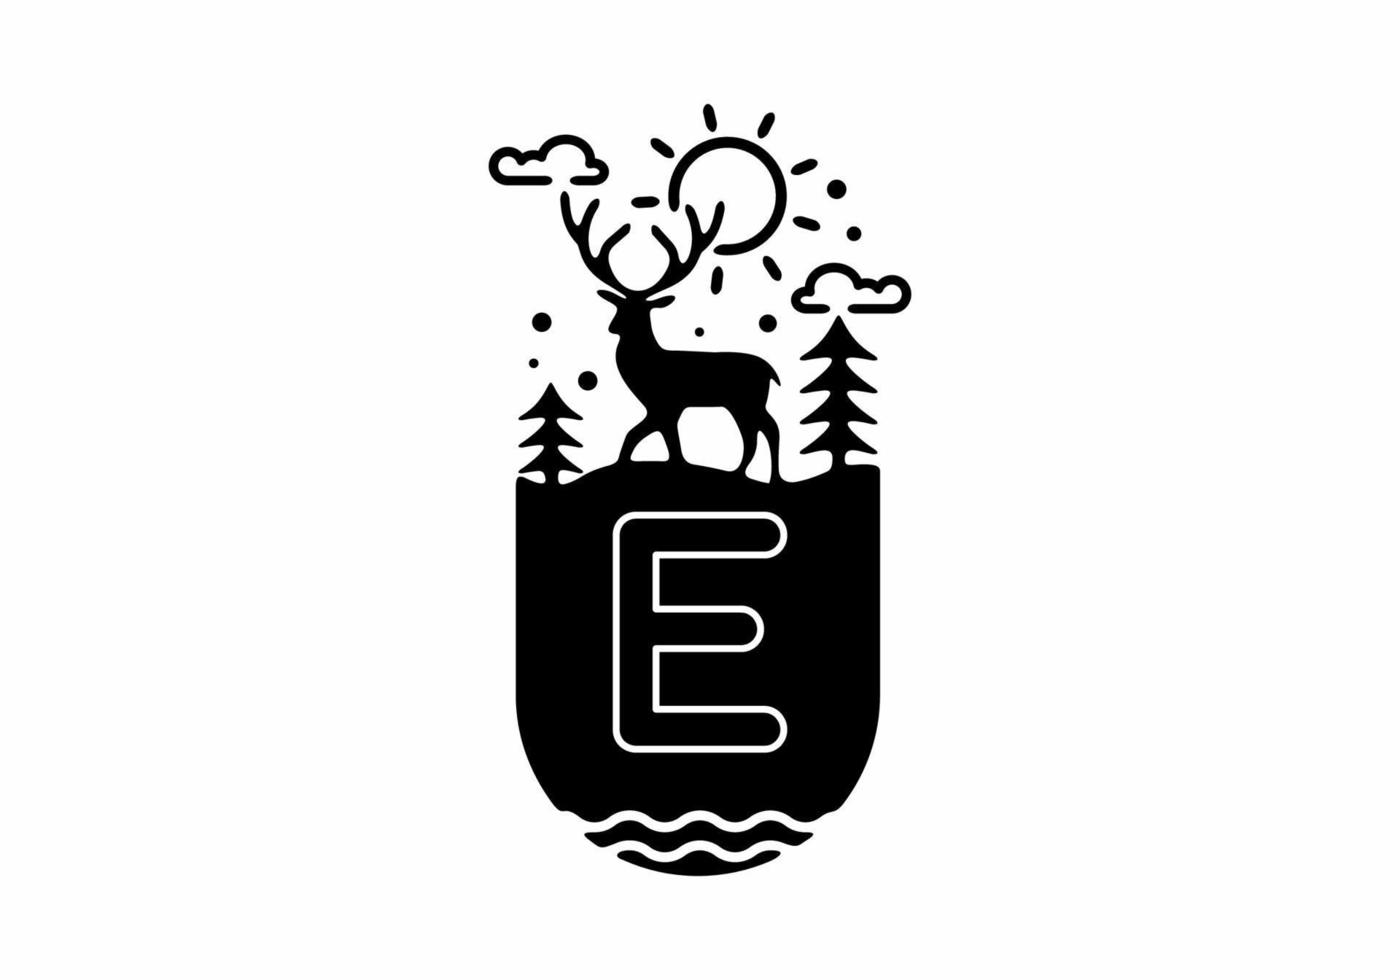 zwarte lijn kunst illustratie van herten badge met e initiële naam in het midden vector